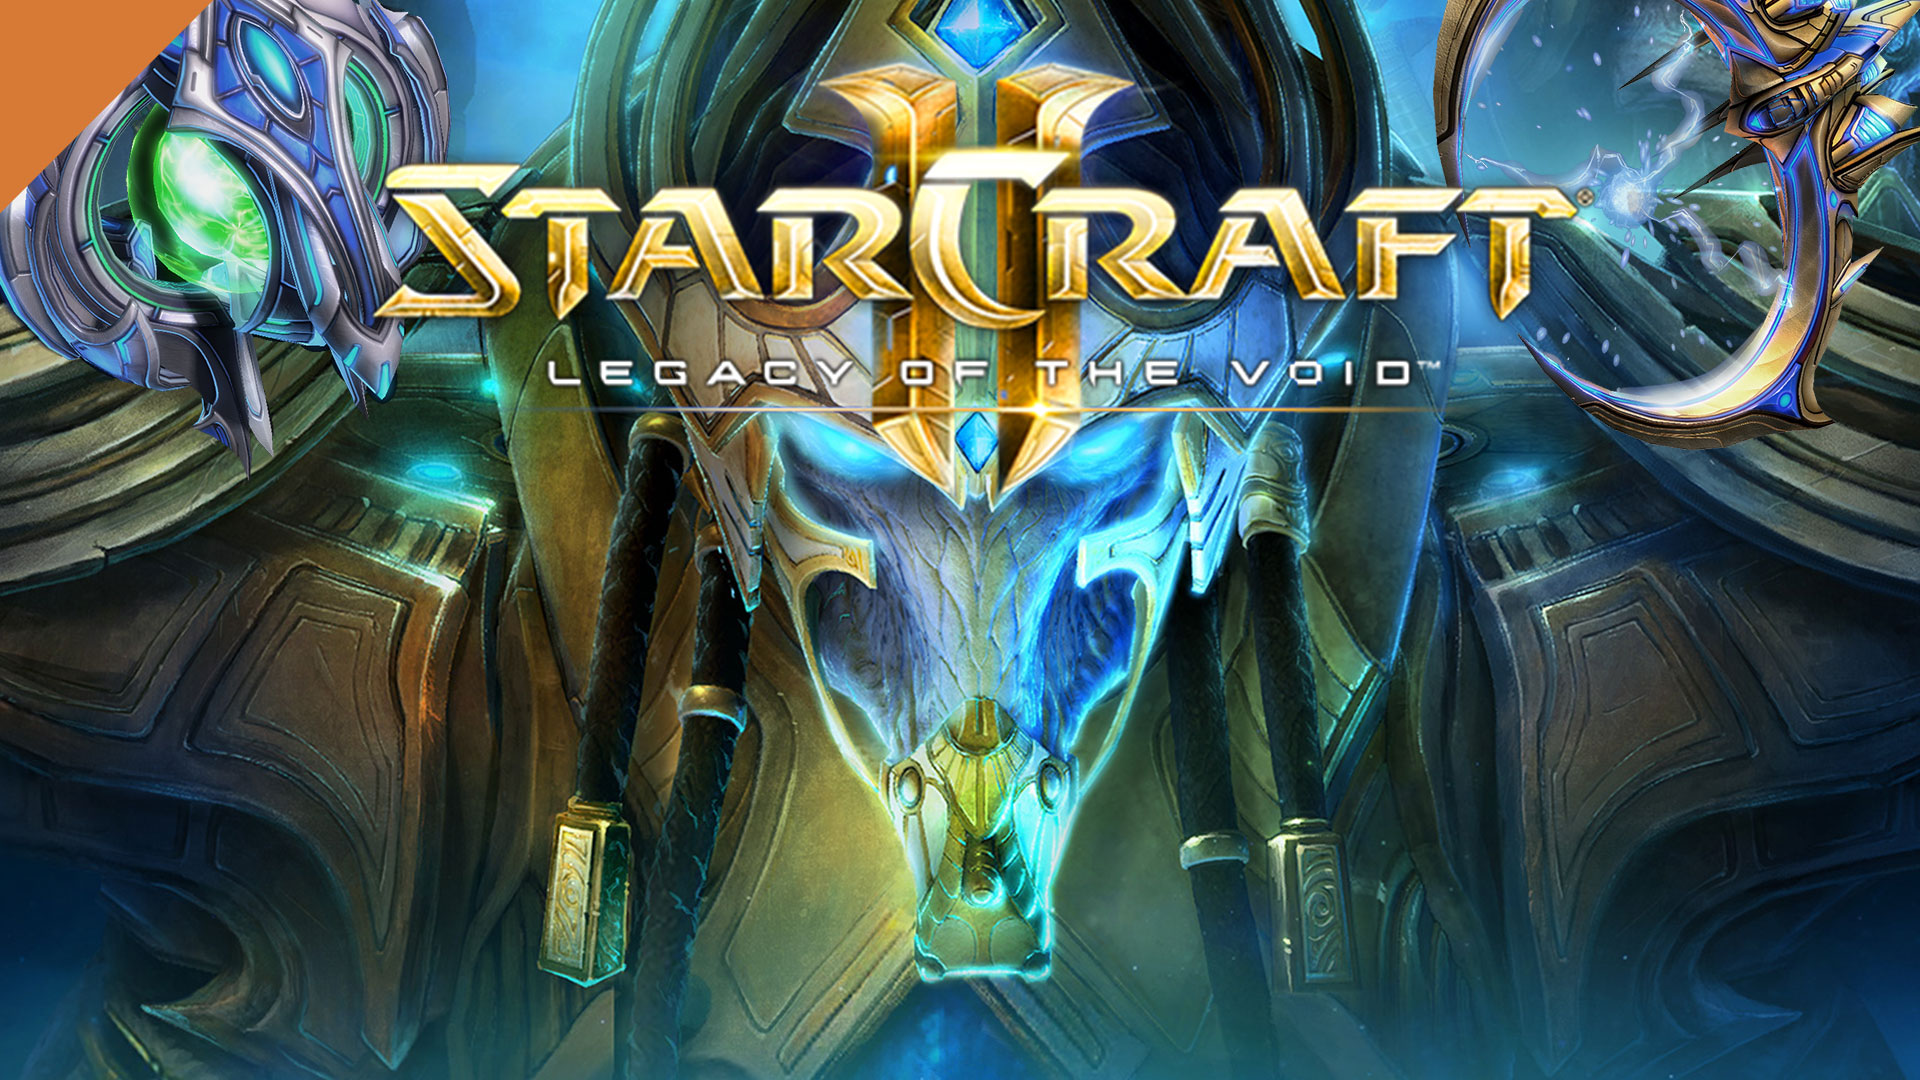 StarCraft II Legacy of the Void - ПОЛНОЕ ПРОХОЖДЕНИЕ 9 Серия ЛЕГЕНДАРНАЯ ЧУМОВАЯ СТРАТЕГИЯ ДЛЯ ДУШИ)